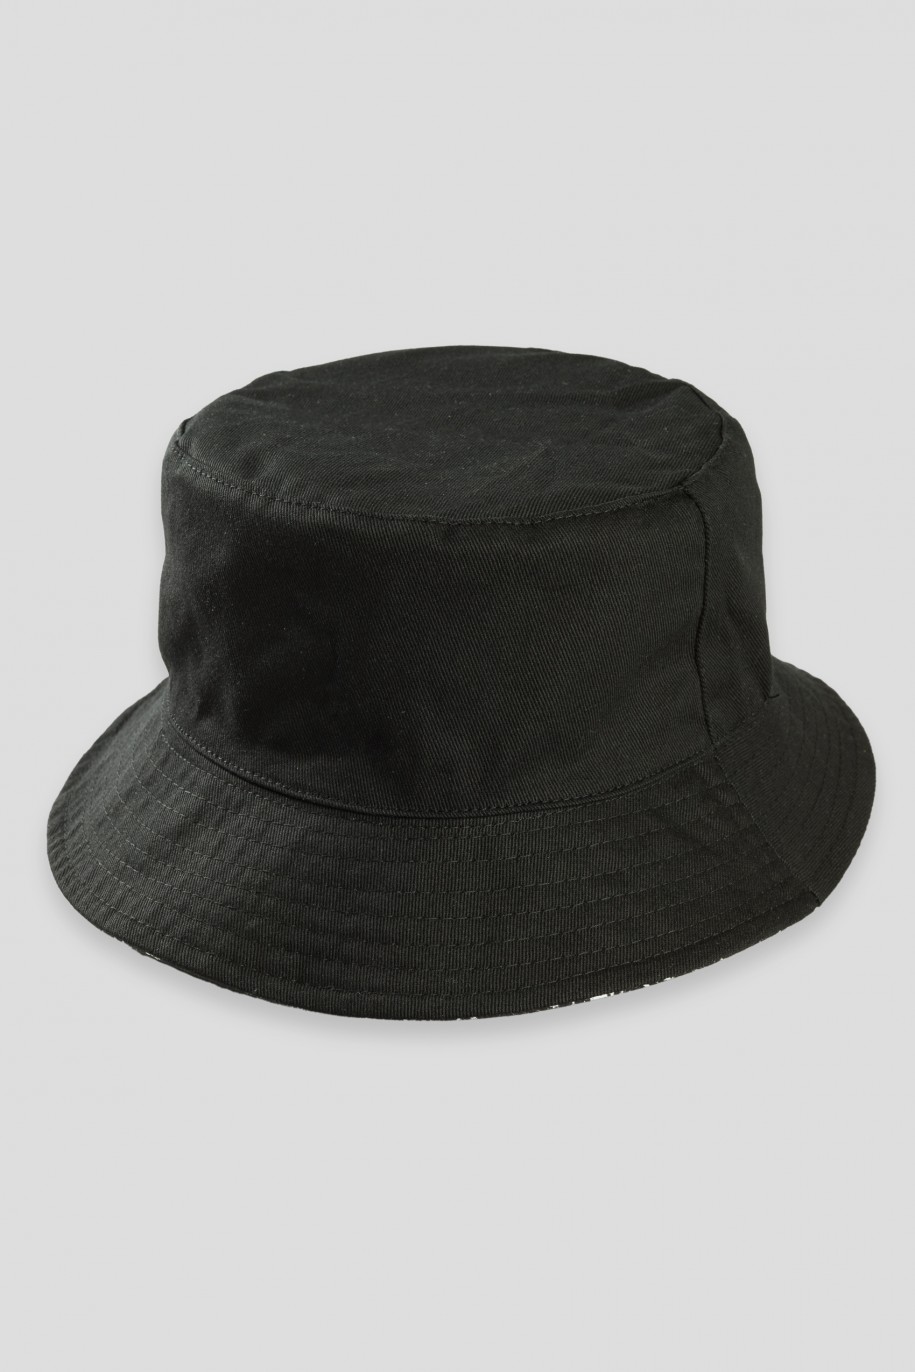 Czarny dwustronny kapelusz typu bucket hat - 42714